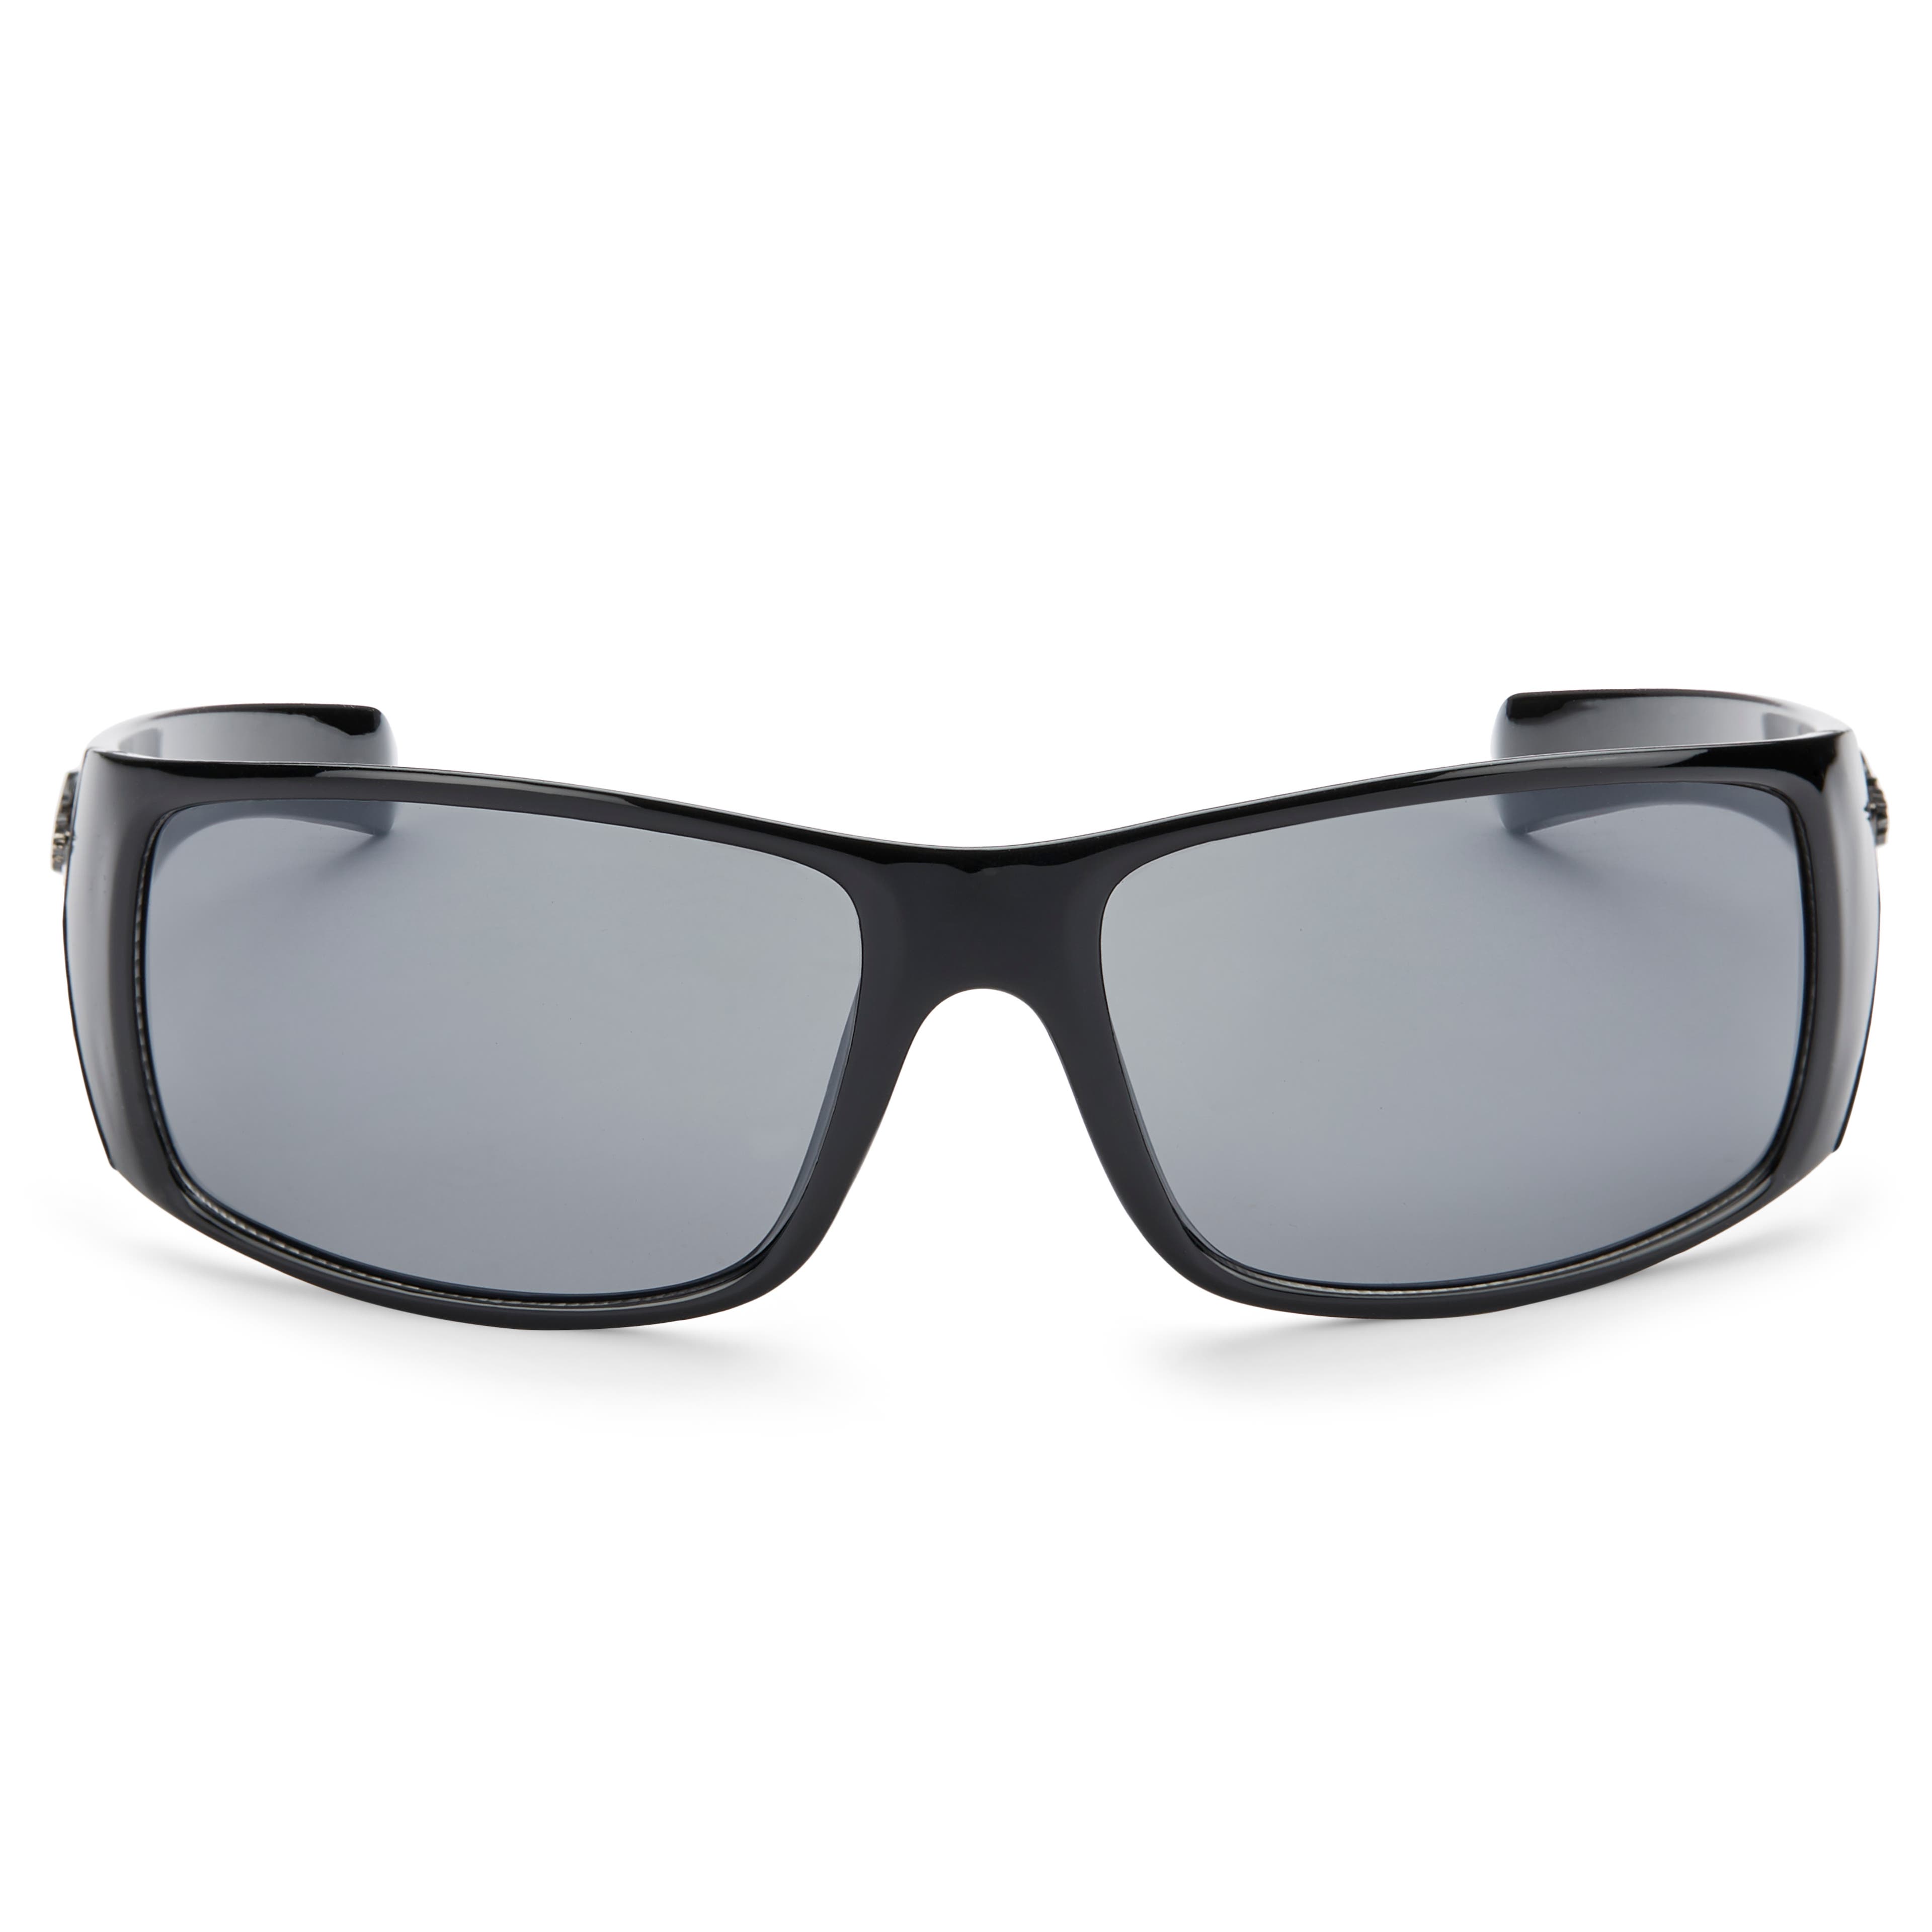 Gafas de sol rectangulares en negro con brillo